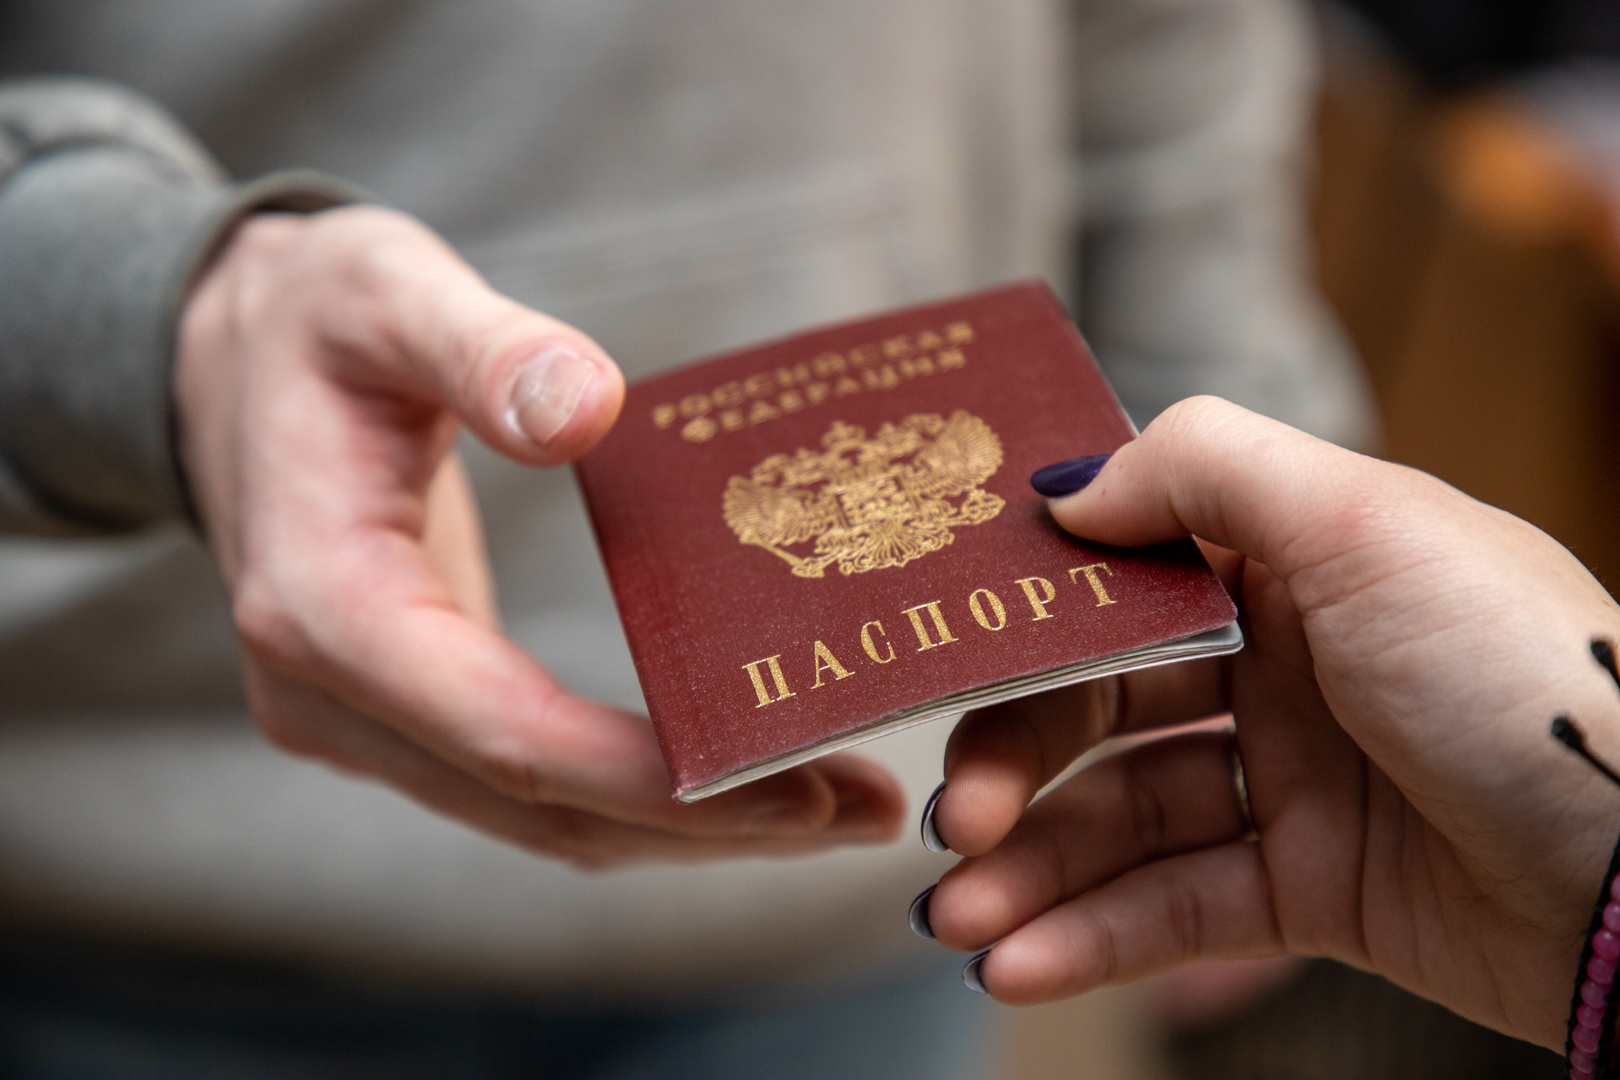 В России могут начать ставить мигрантов на воинский учет при получении паспорта